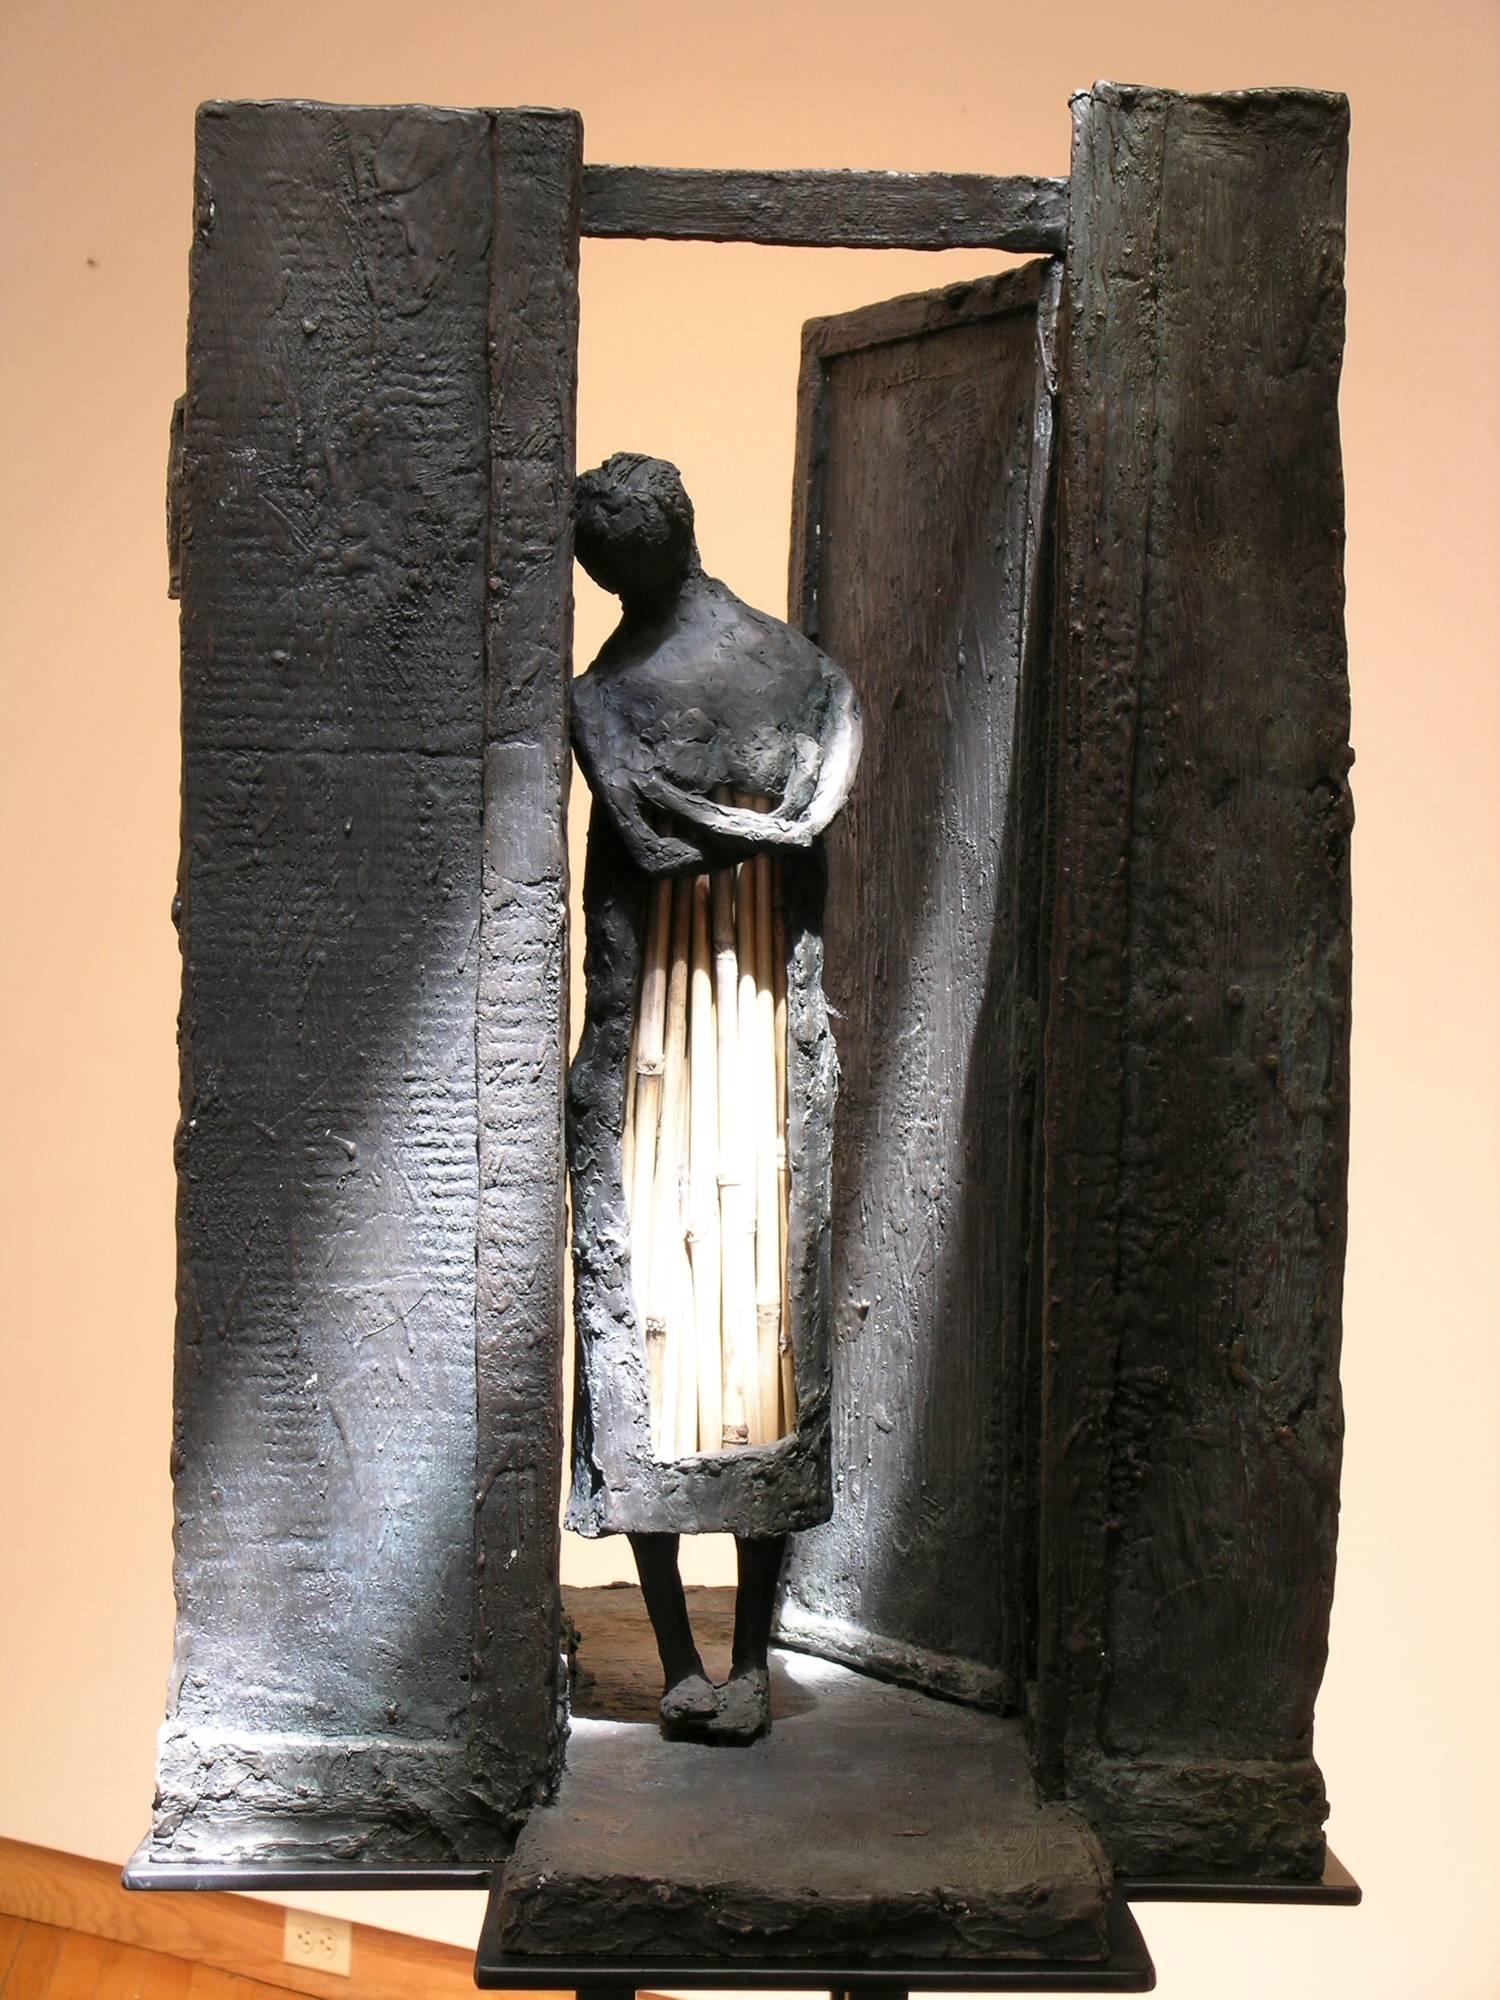 Wood Sculpture, Eduardo Chavez